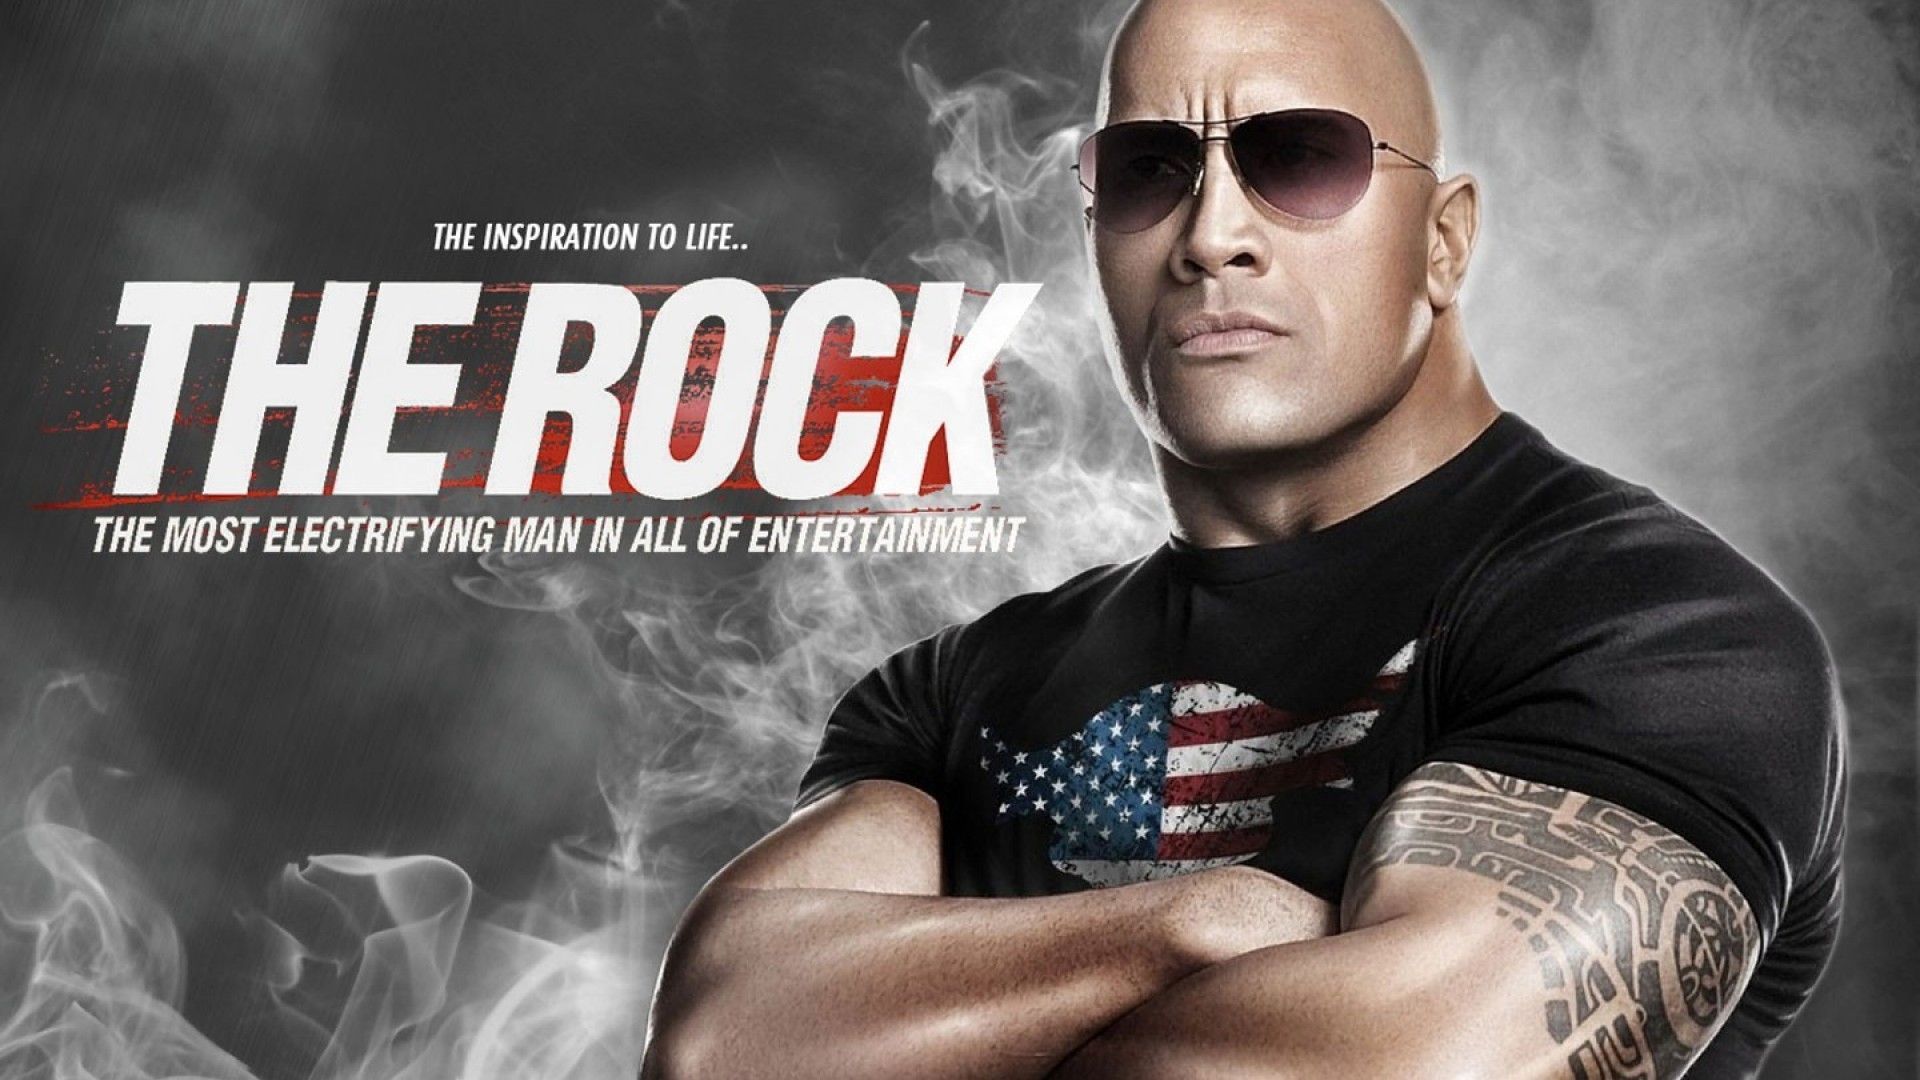 WWE Rock Wallpapers HD - Fondo de pantalla de la cueva